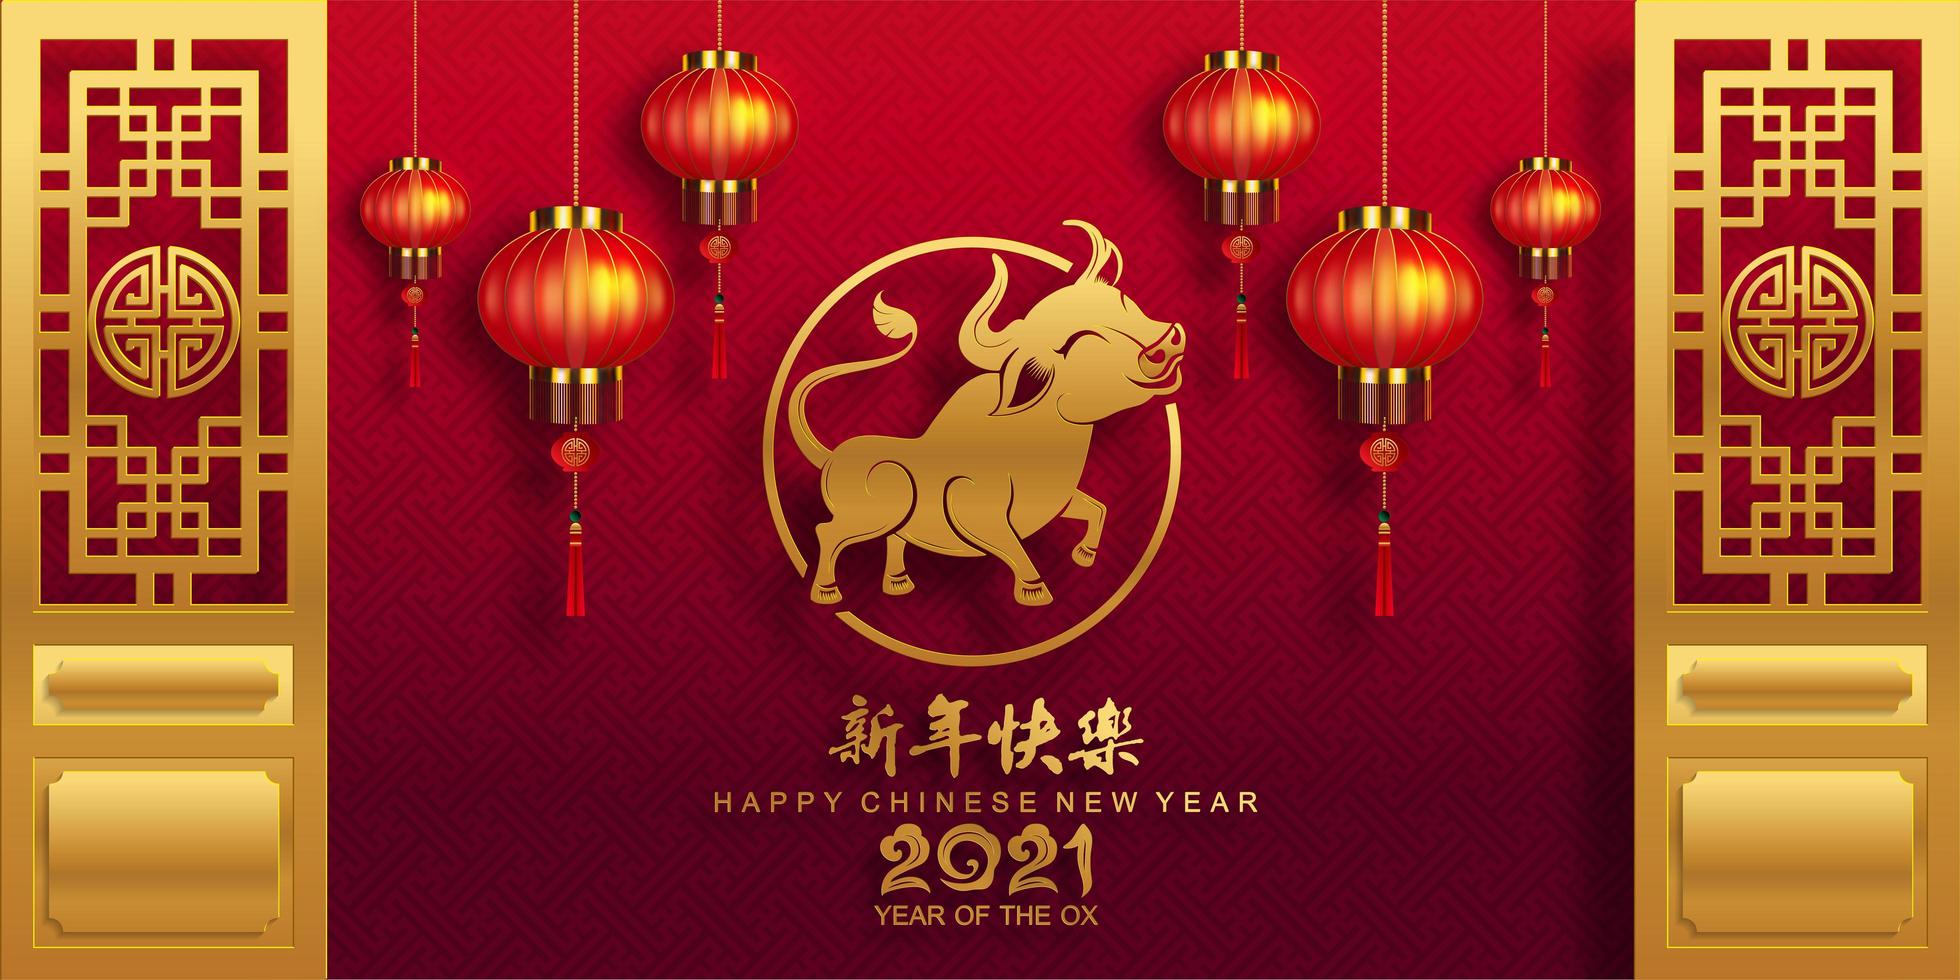 ano novo chinês 2021 banner com lanternas e boi vetor